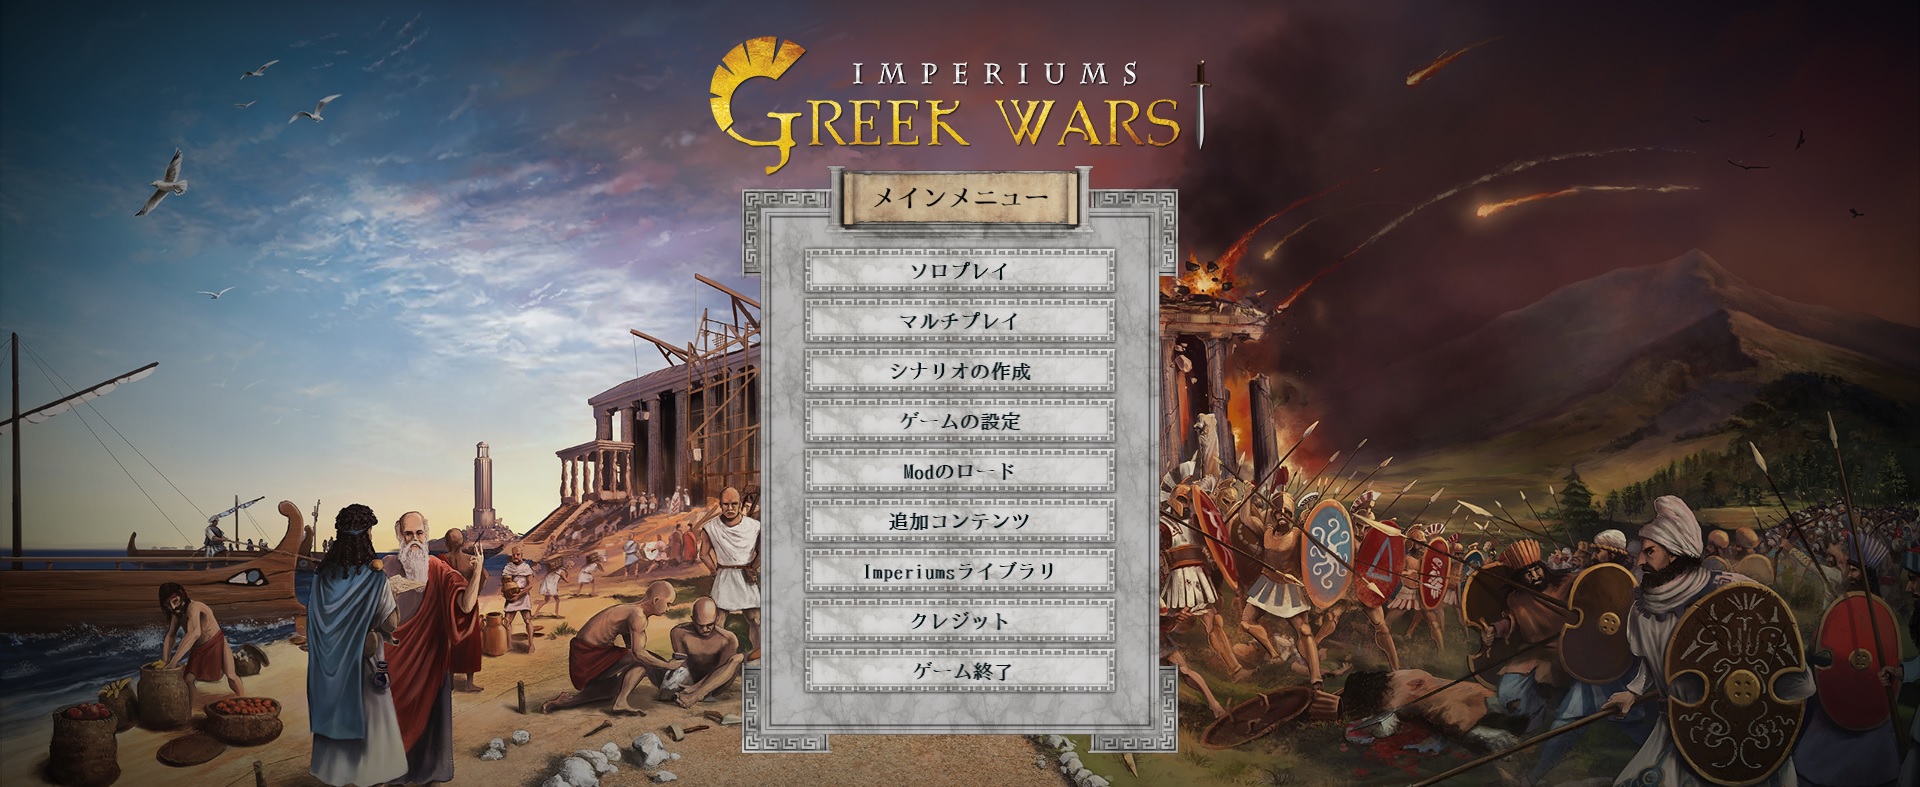 Imperiums Greek Wars 日本語対応について Imperiums Greek Wars 日本語 Wiki